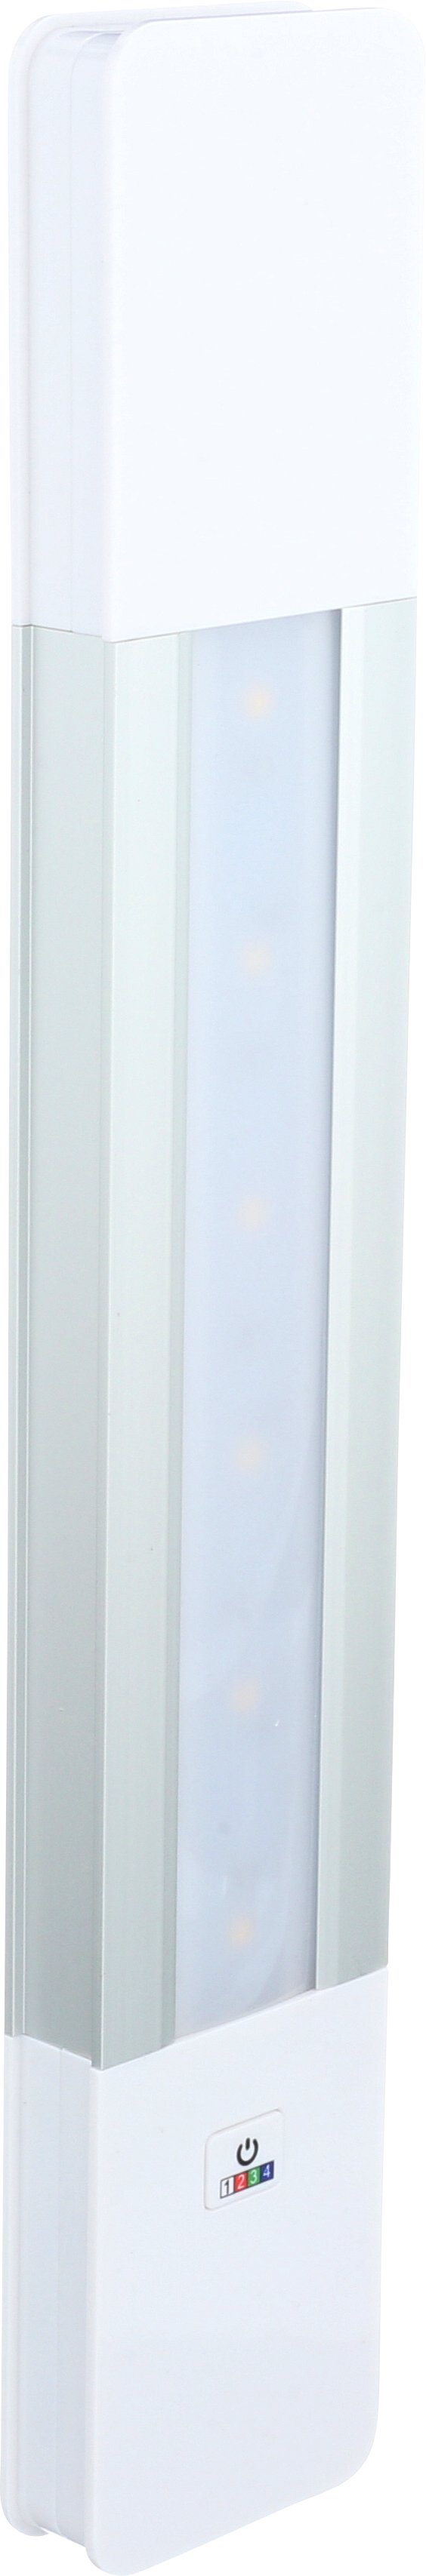 Bria LED Bar Light RGB with Remote | BL-BR33RGB-SW